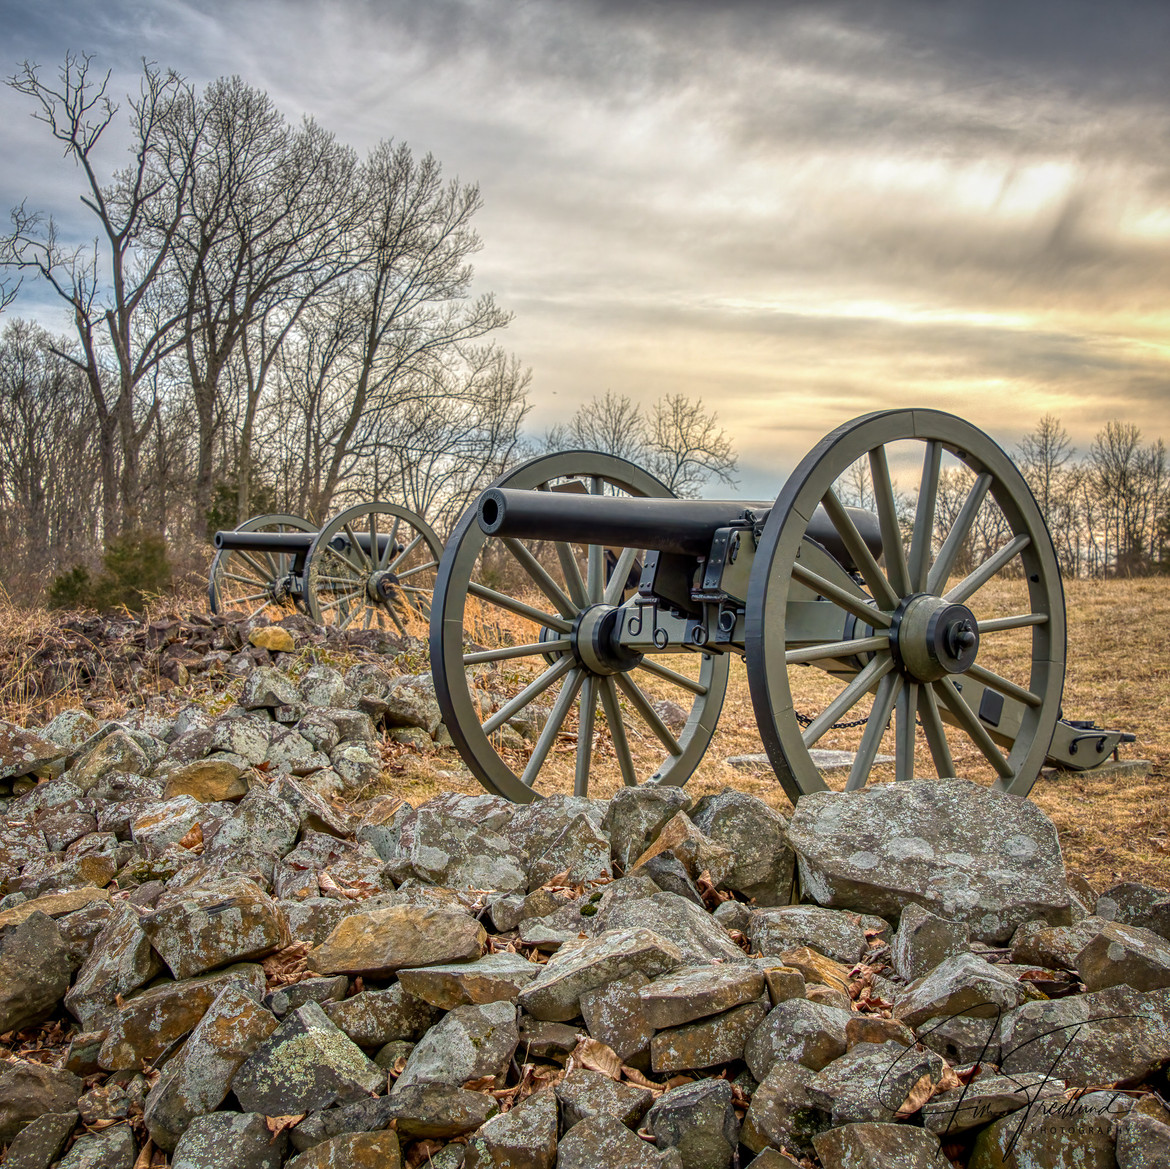 GettysburgEditjpg